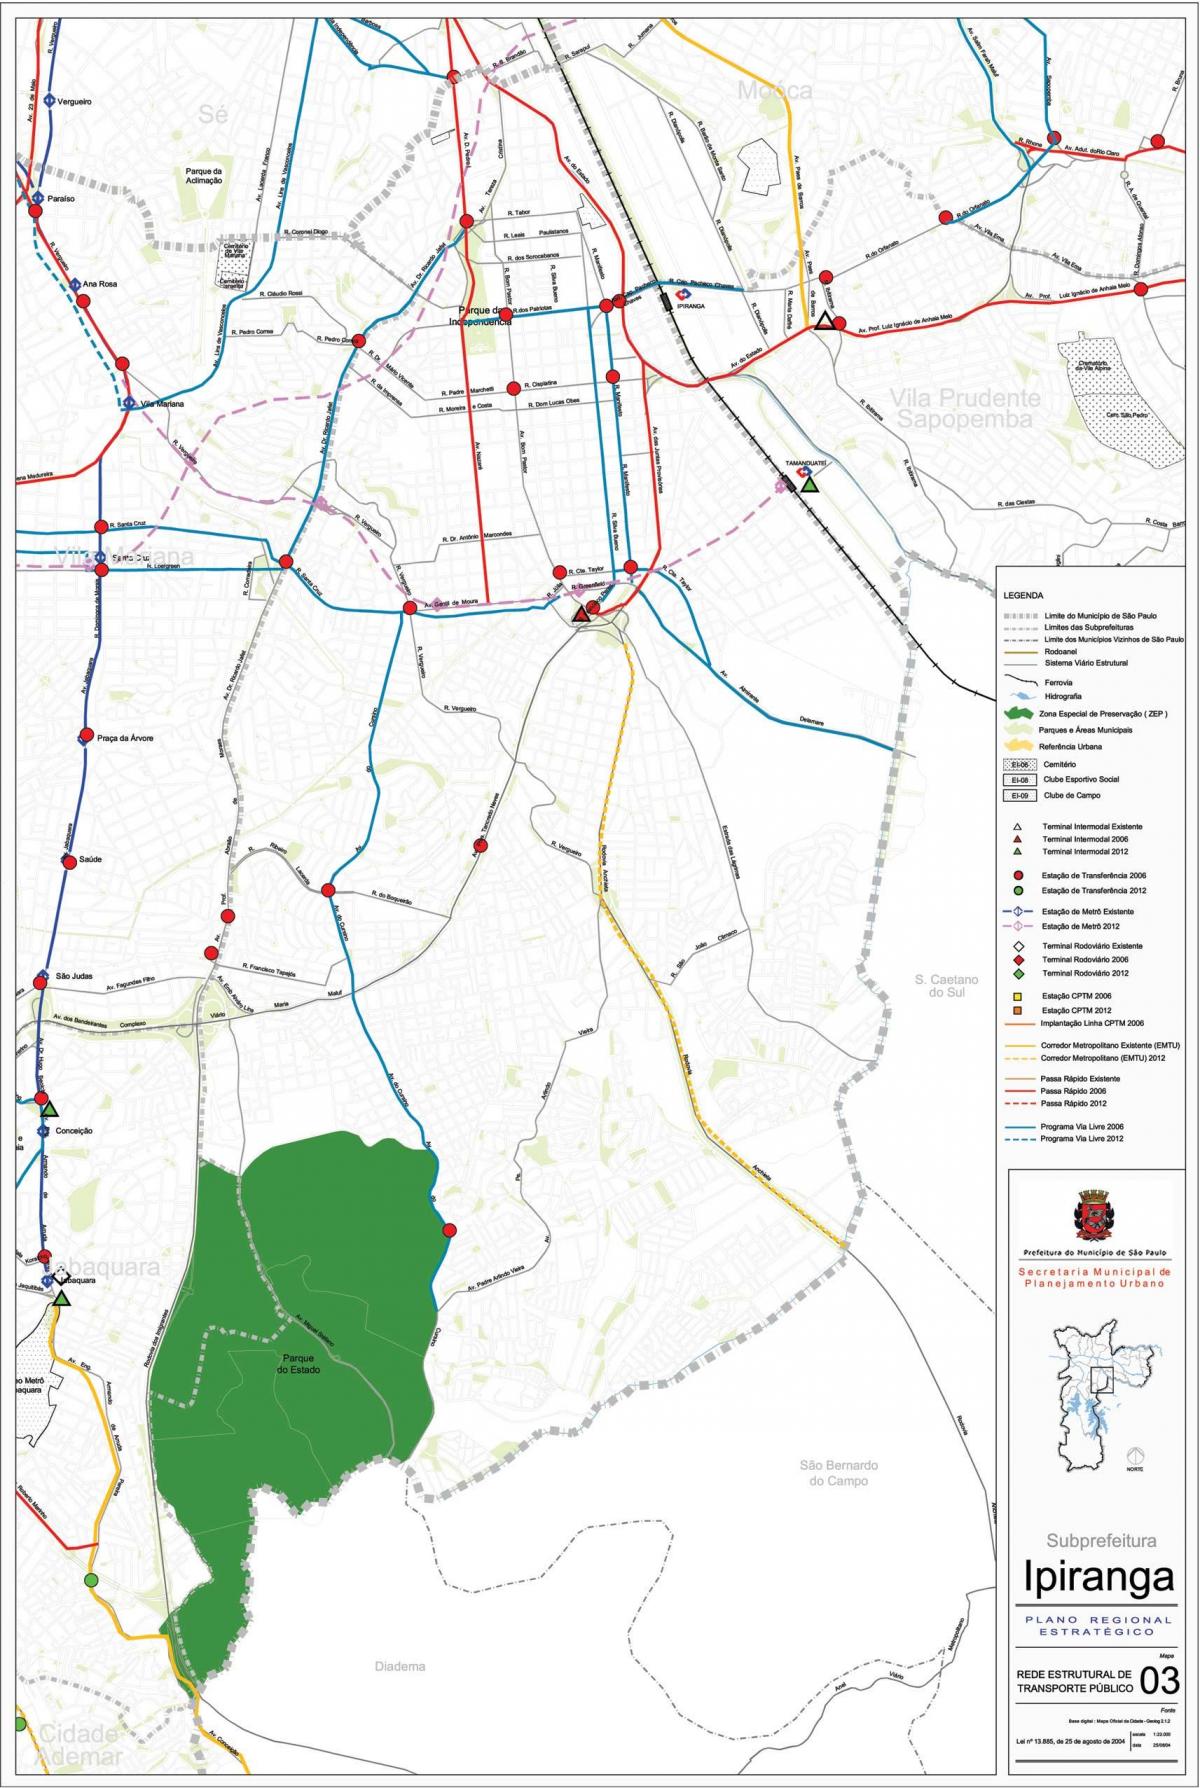 Mapa do Ipiranga, São Paulo - transportes Públicos